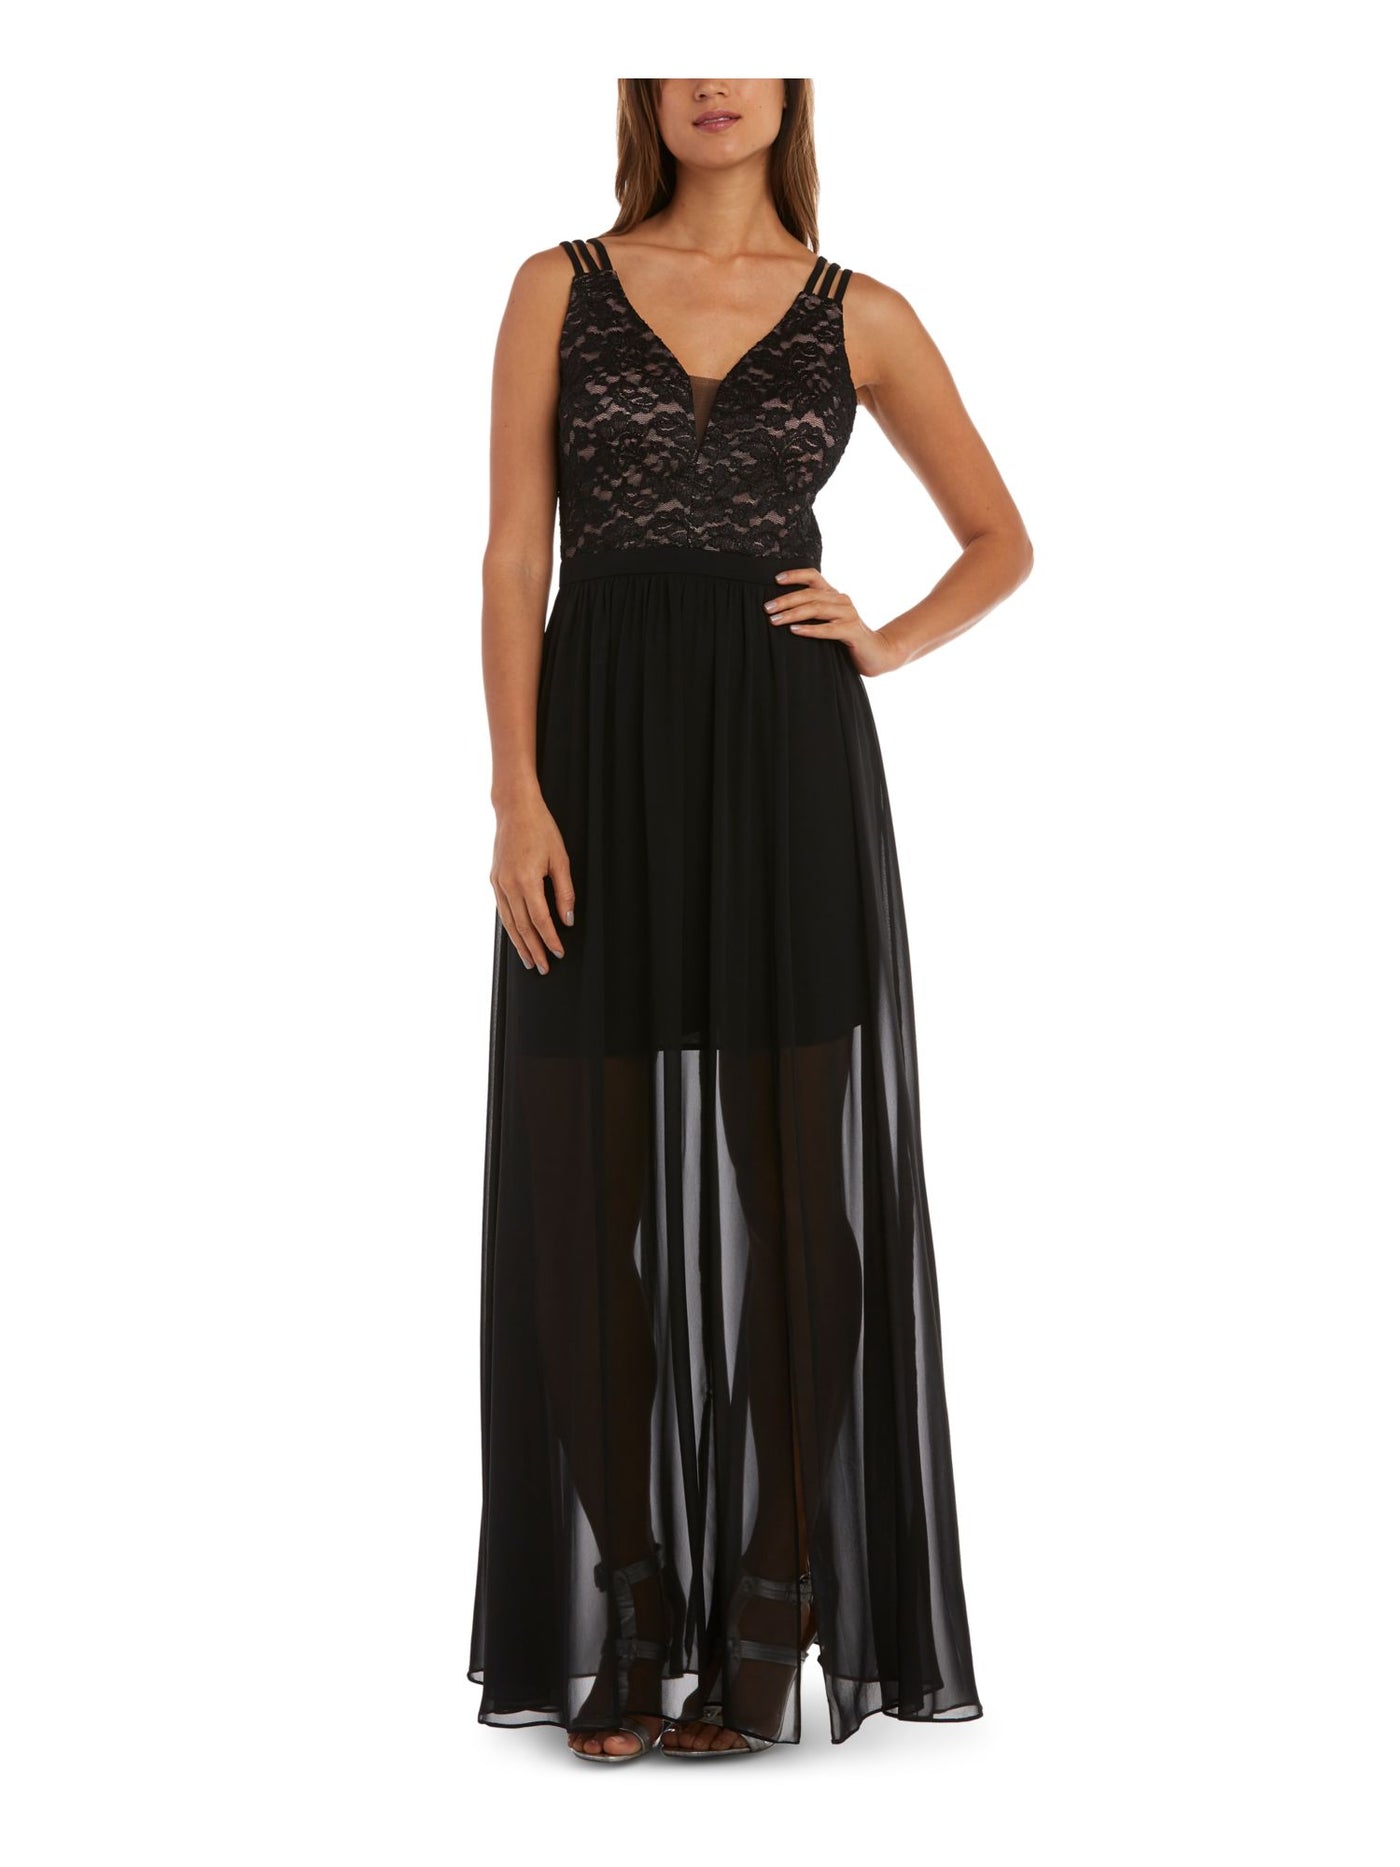 MORGAN & CO Womens Black Sheer Glitter Floral Spaghetti Strap V Neck Full-Length Formal Empire Waist Dress Juniors 5